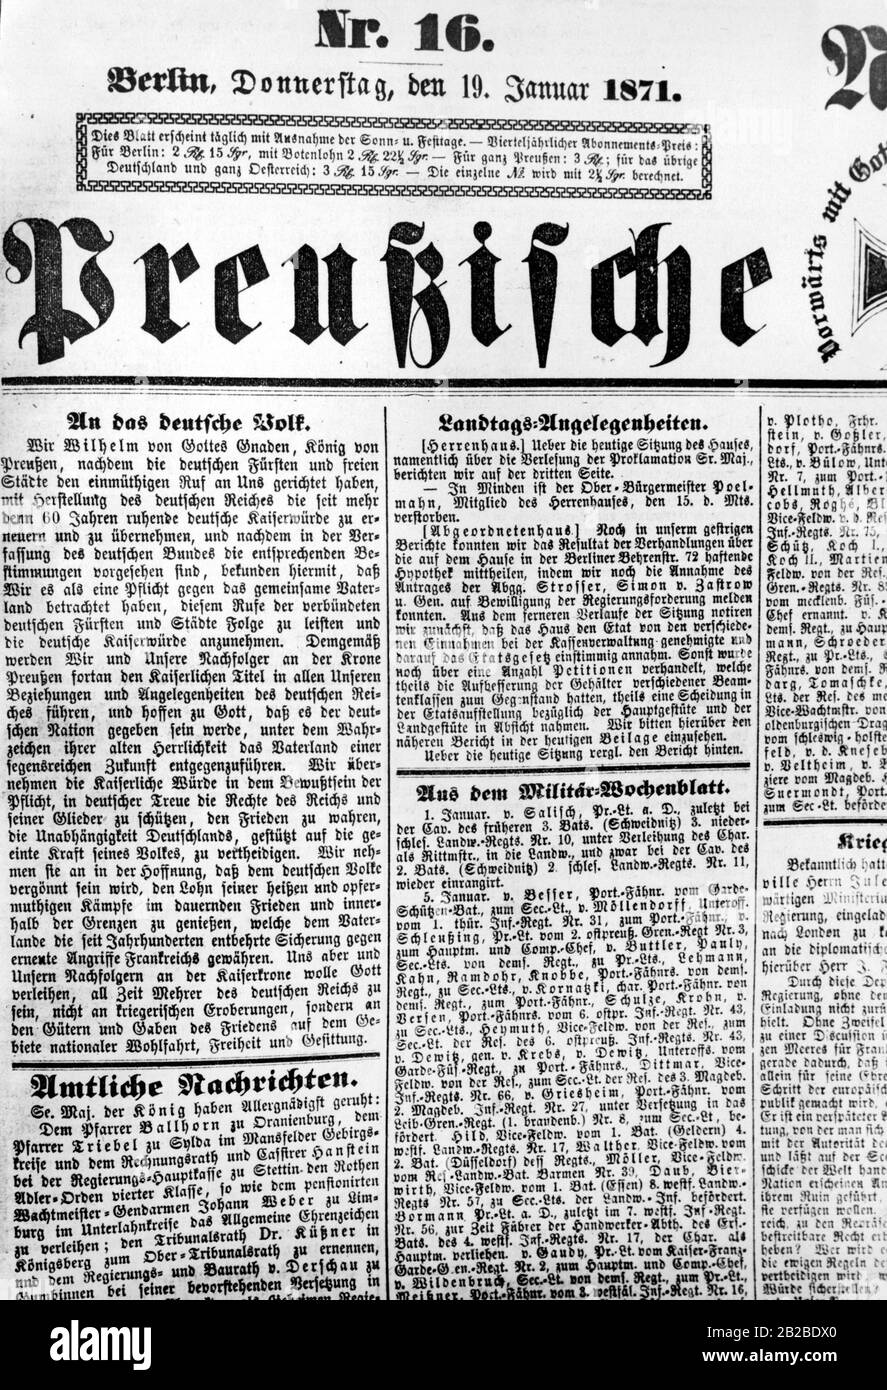 Zeitungsbericht über die Ausrufung des preussischen Königs Wilhelm zum deutschen Kaiser in Versailles. Stockfoto